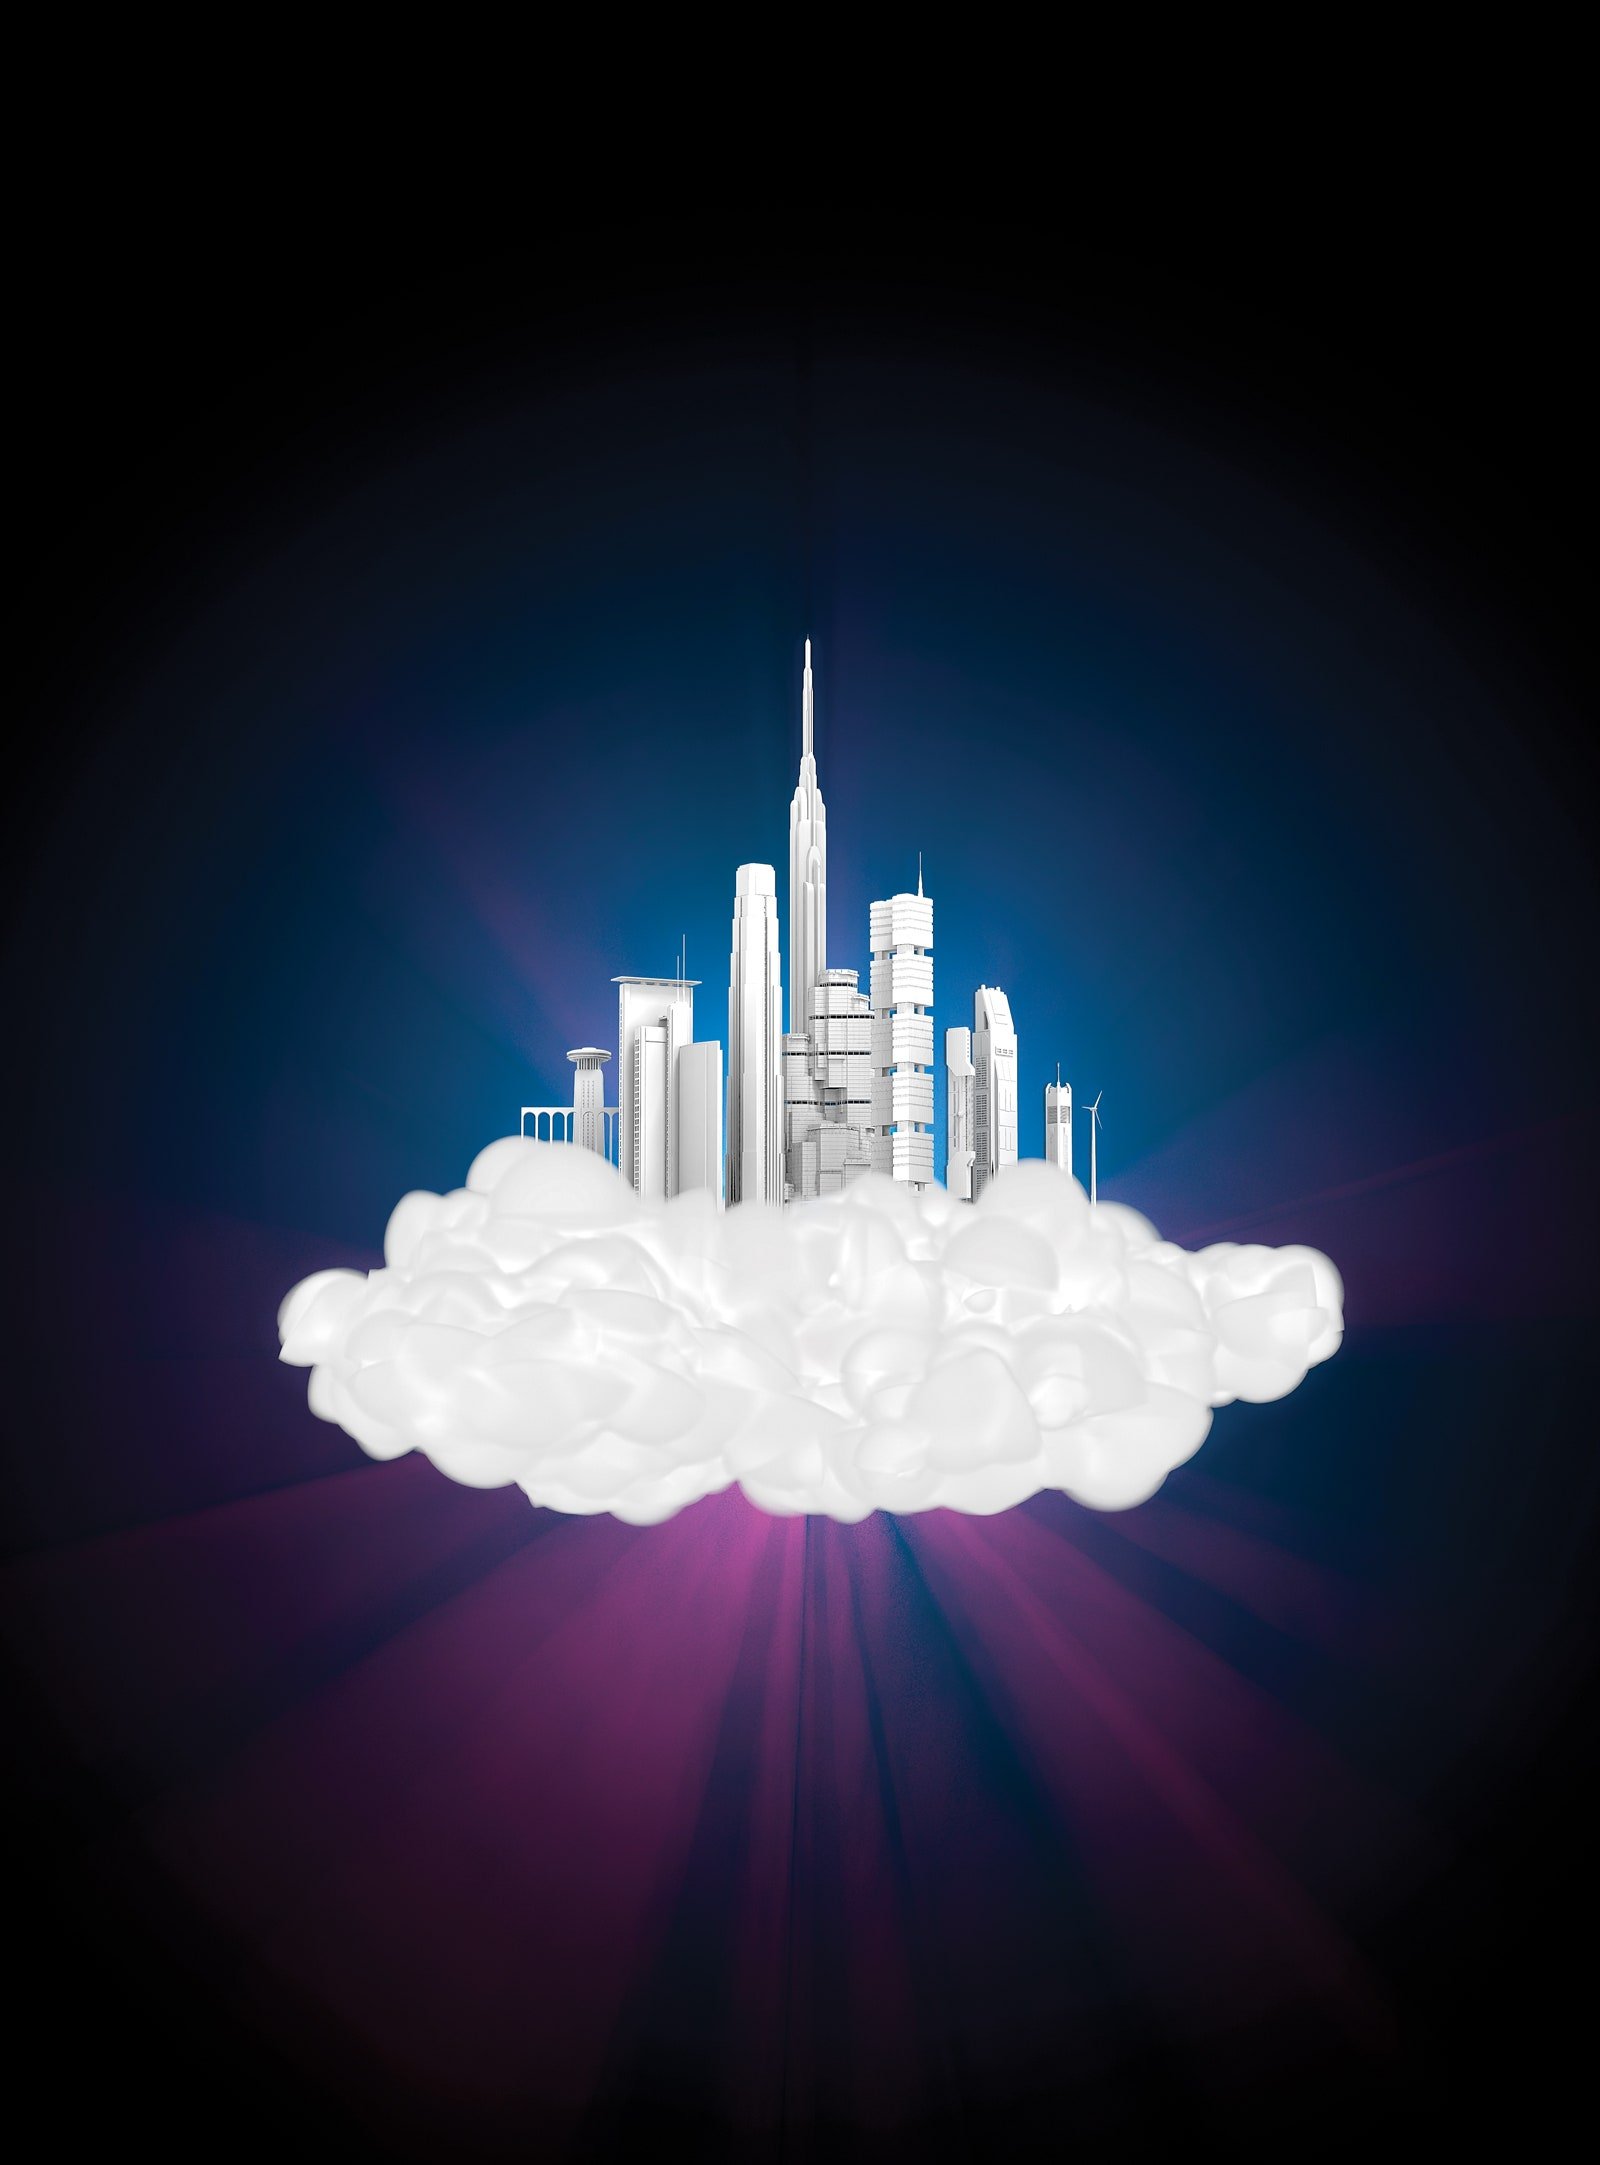 Une illustration d'une ville dans un nuage par l'artiste Eddie Guy